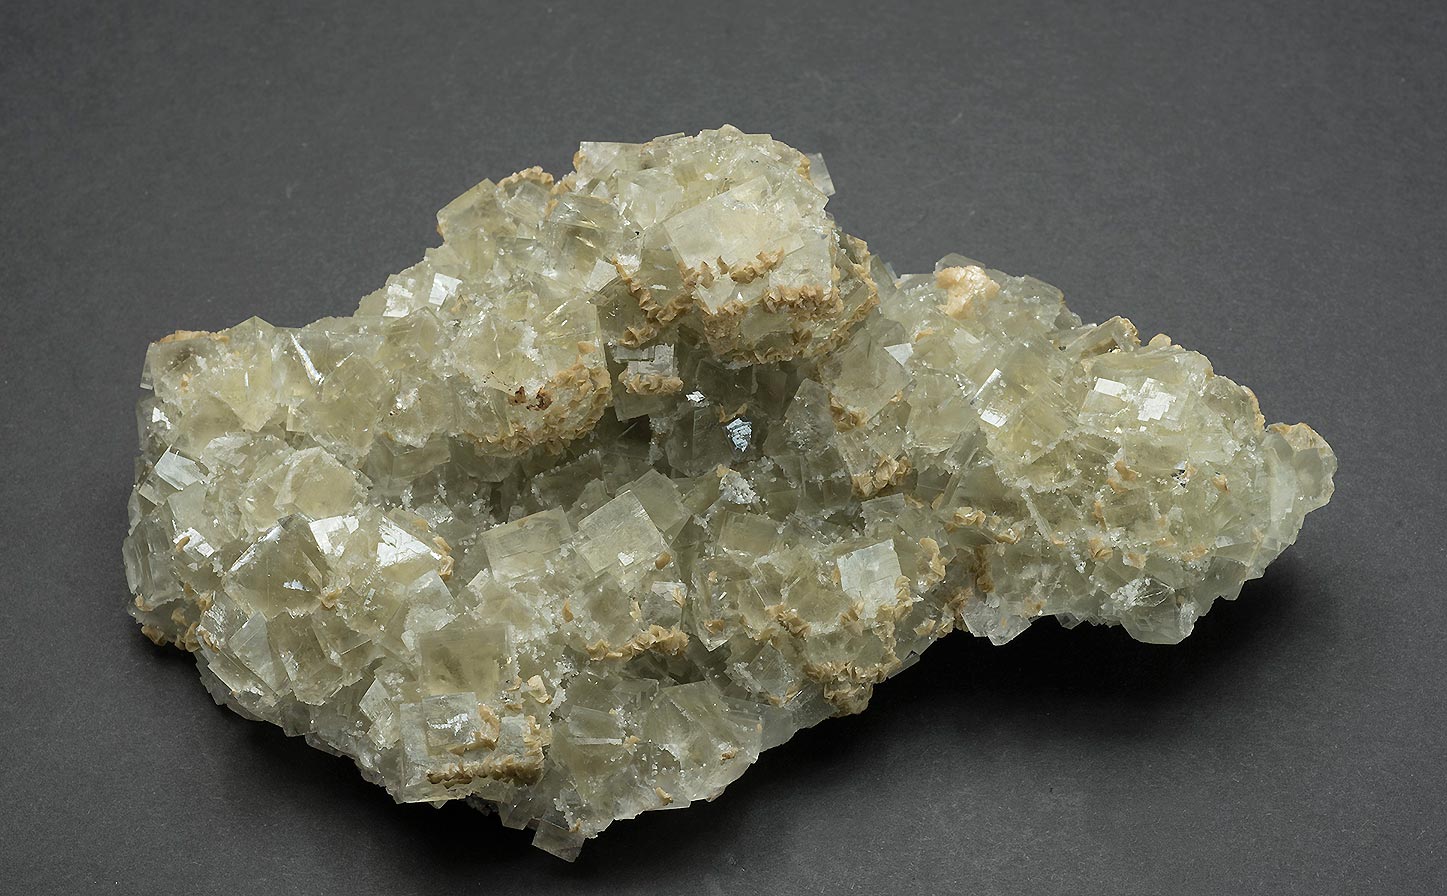 Fluorite, Silverdykes vein, Blackdene mine, Ireshopeburn, Weardale.   160x100x45mm 'Floater'.